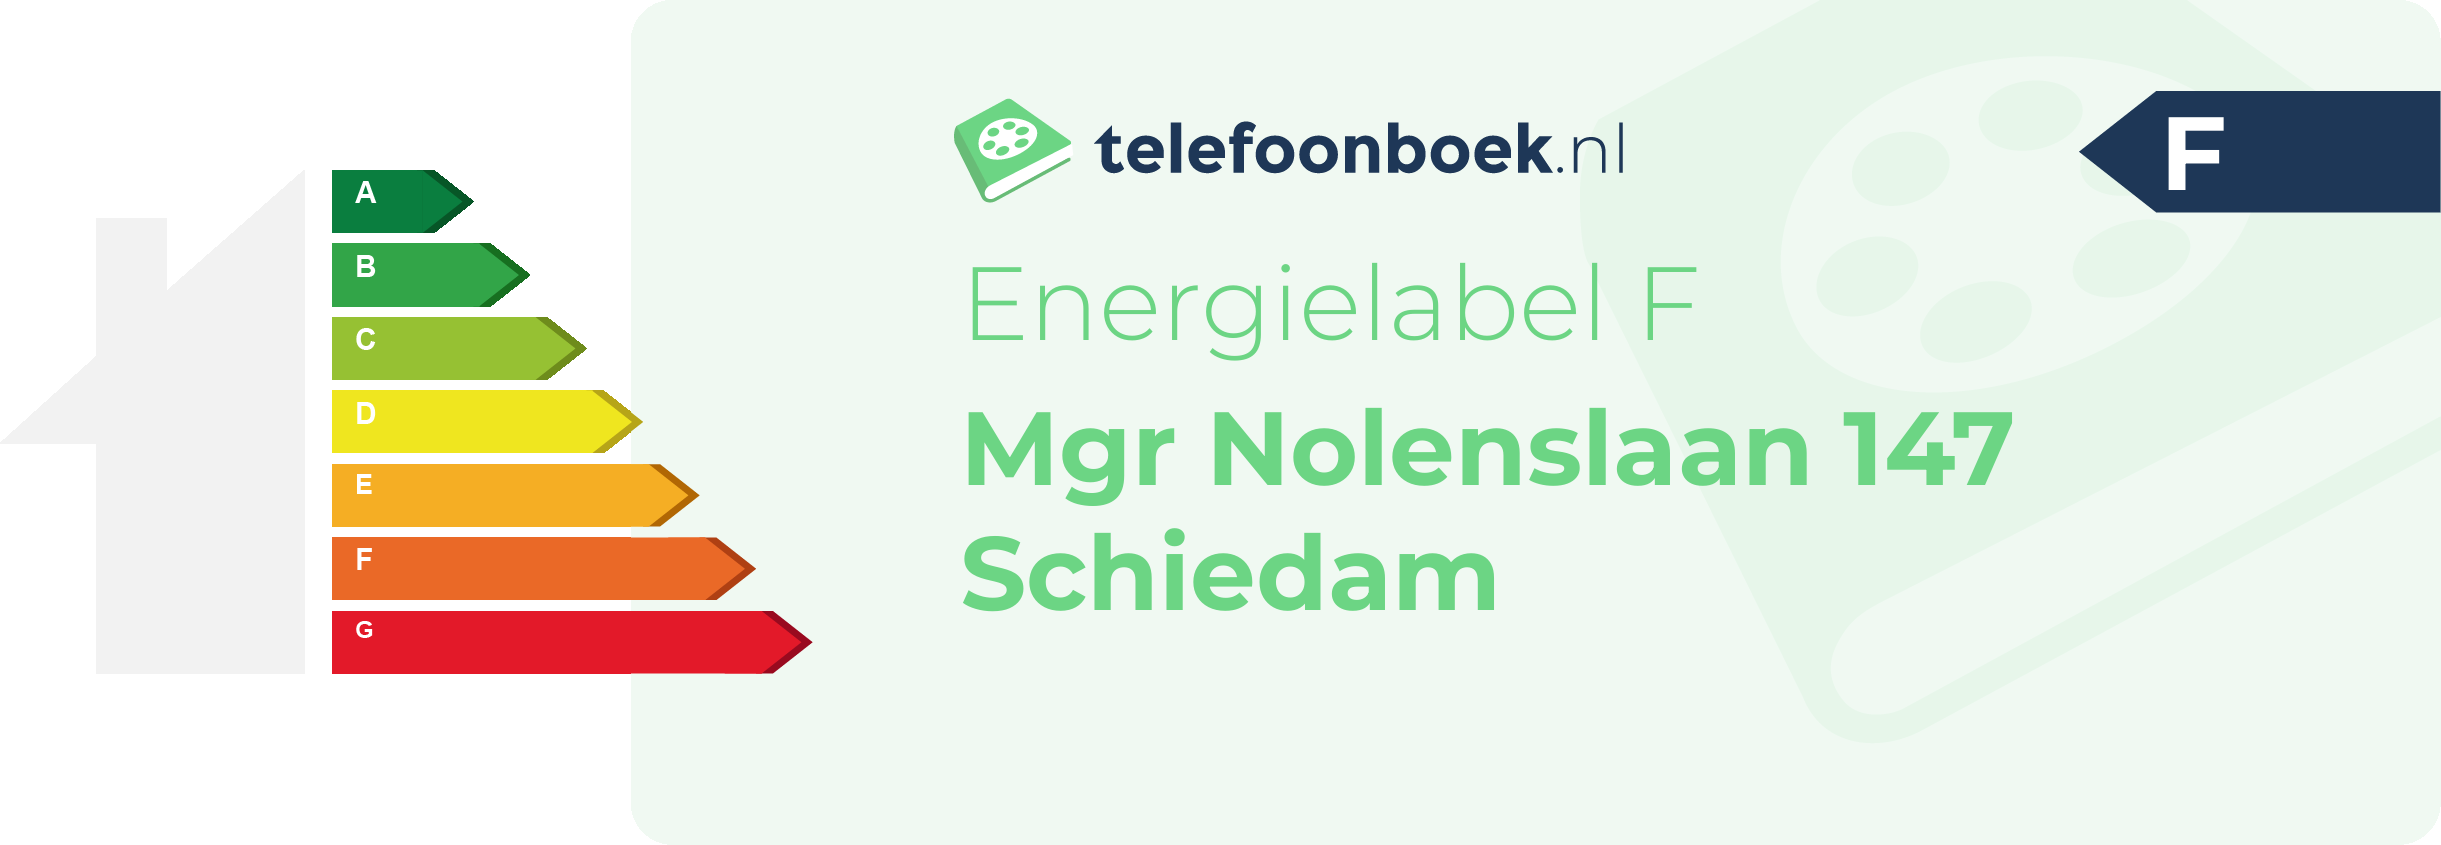 Energielabel Mgr Nolenslaan 147 Schiedam